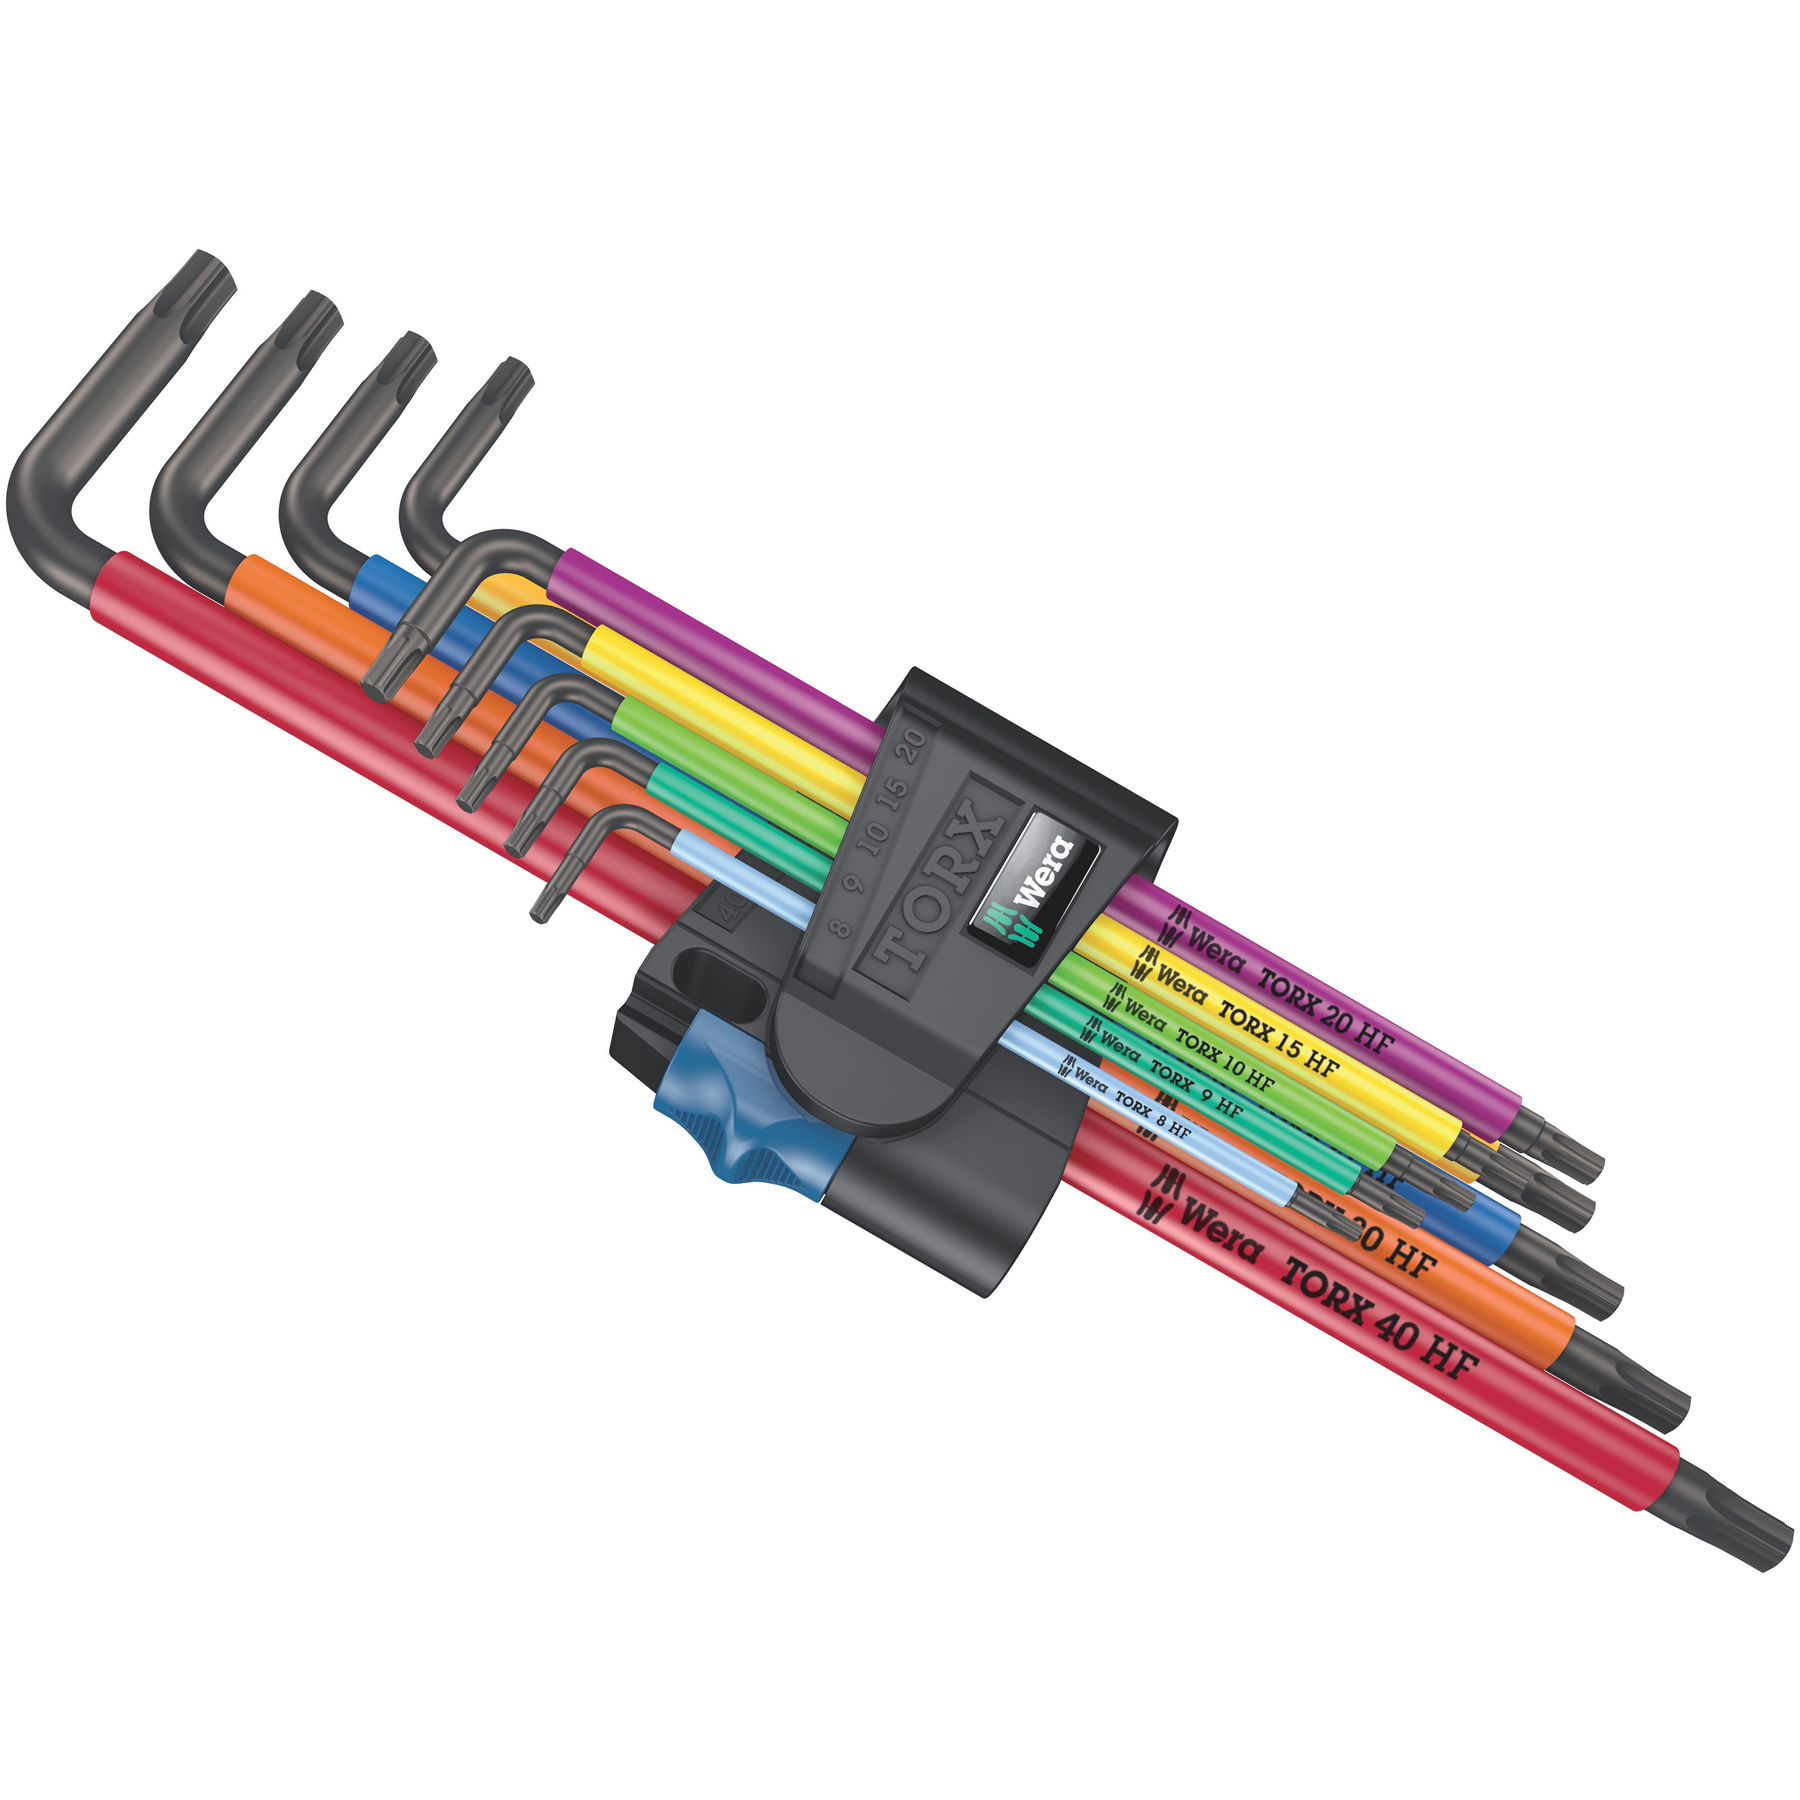 Productfoto van Wera 967/9 TX XL Multicolour HF 1 - TORX® Stiftsleutelset met Vasthoudfunctie - 9-delig